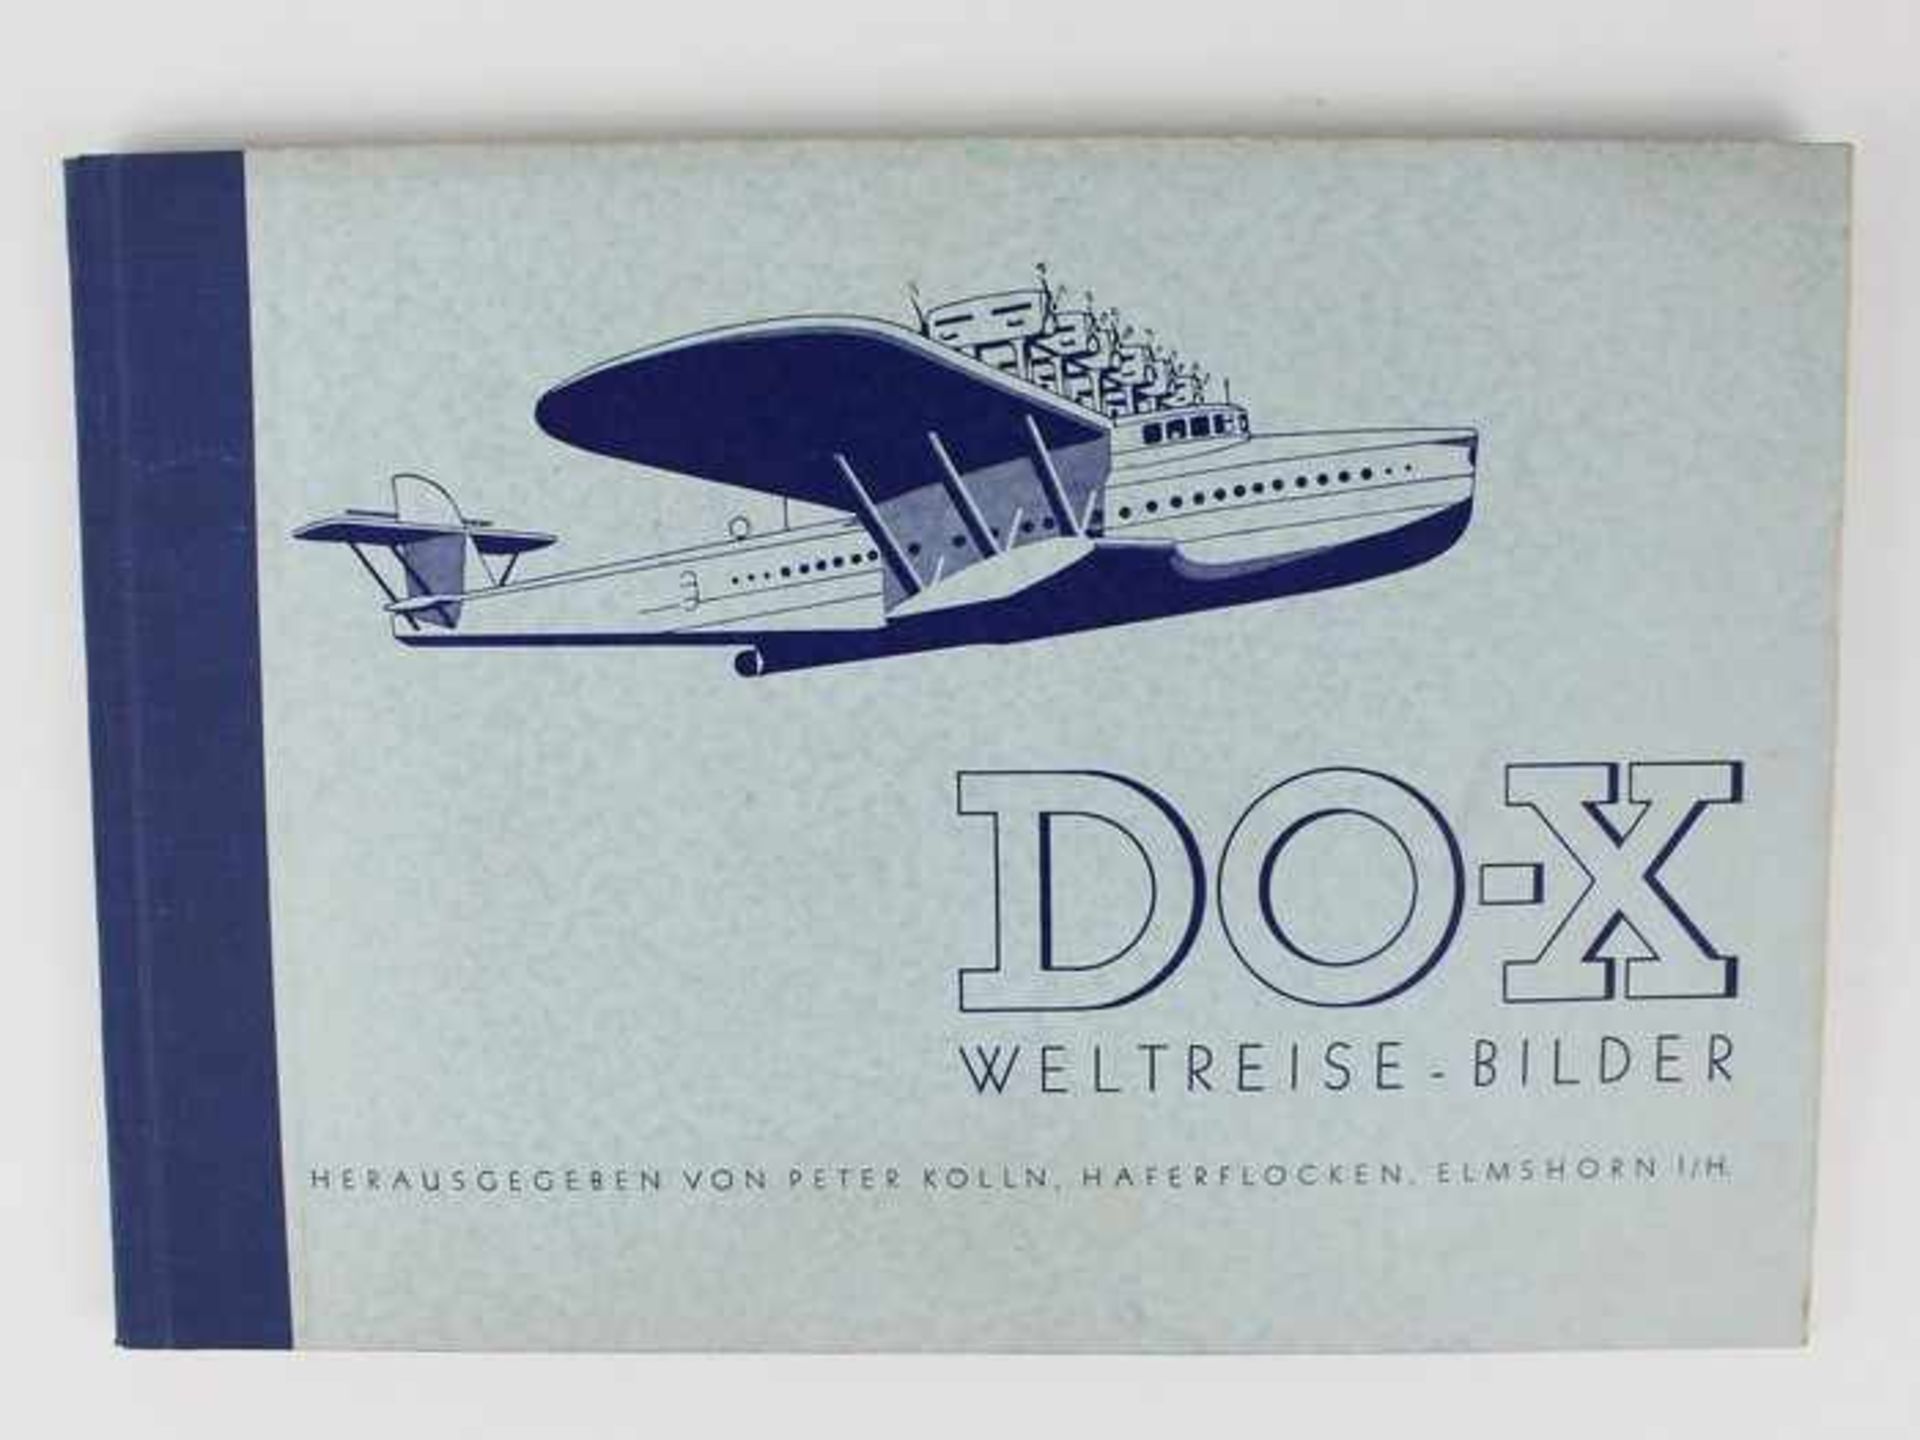 Weltreise-BilderKölln, Peter (Hg.): "DO-X Weltreise - Bilder", Haferflocken, Elmshorn 1933, komplett